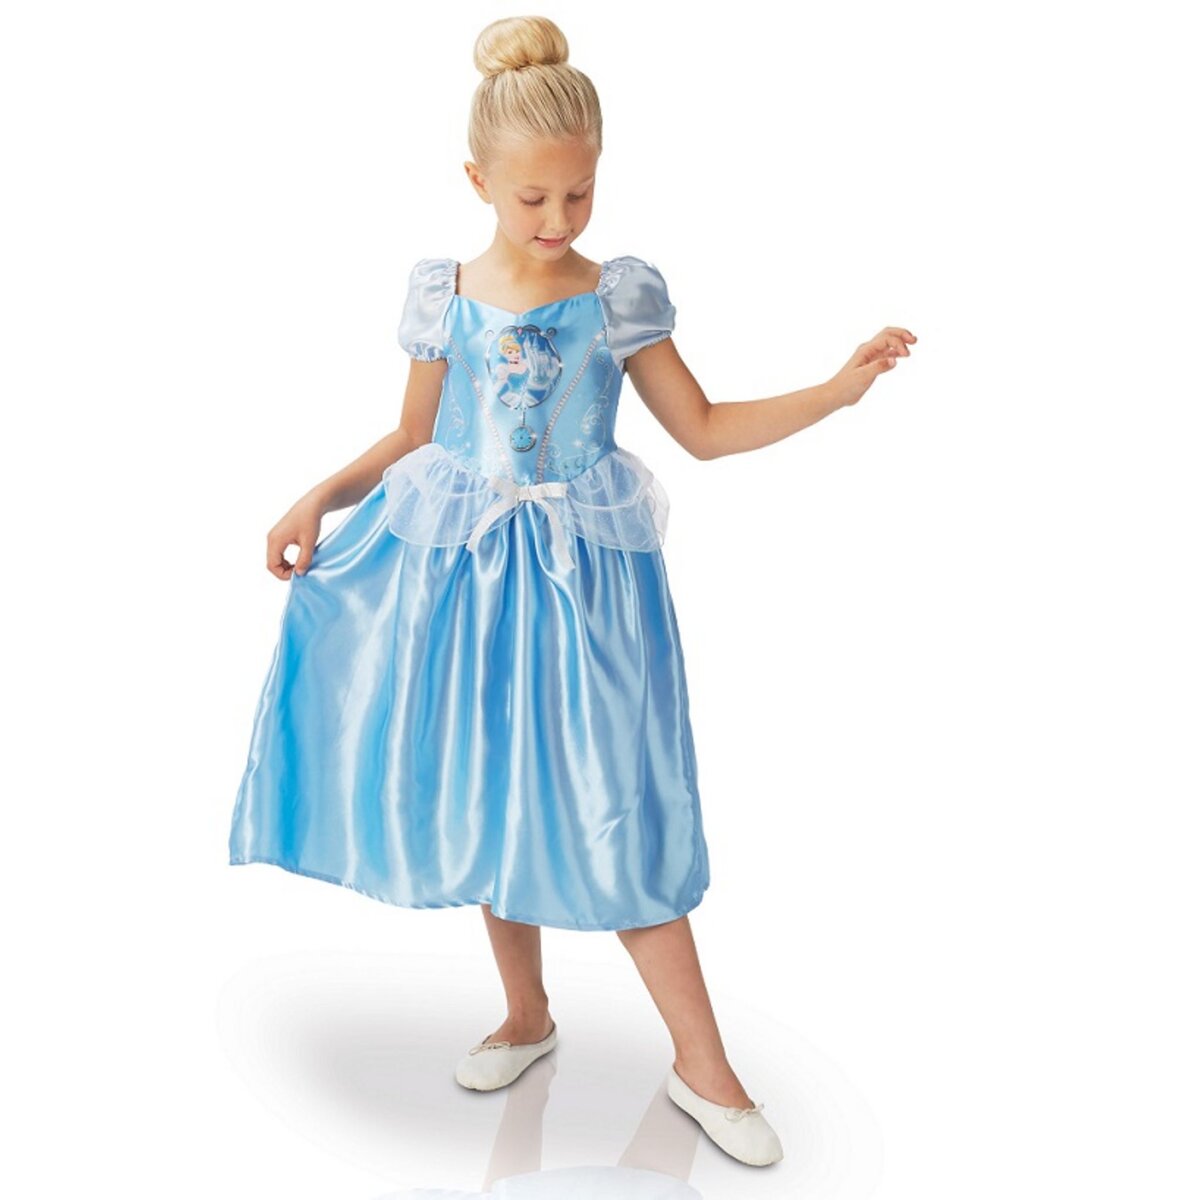 RUBIES Déguisement Fairy Tale Cendrillon Taille M - 5/6 ans - Disney Princesses